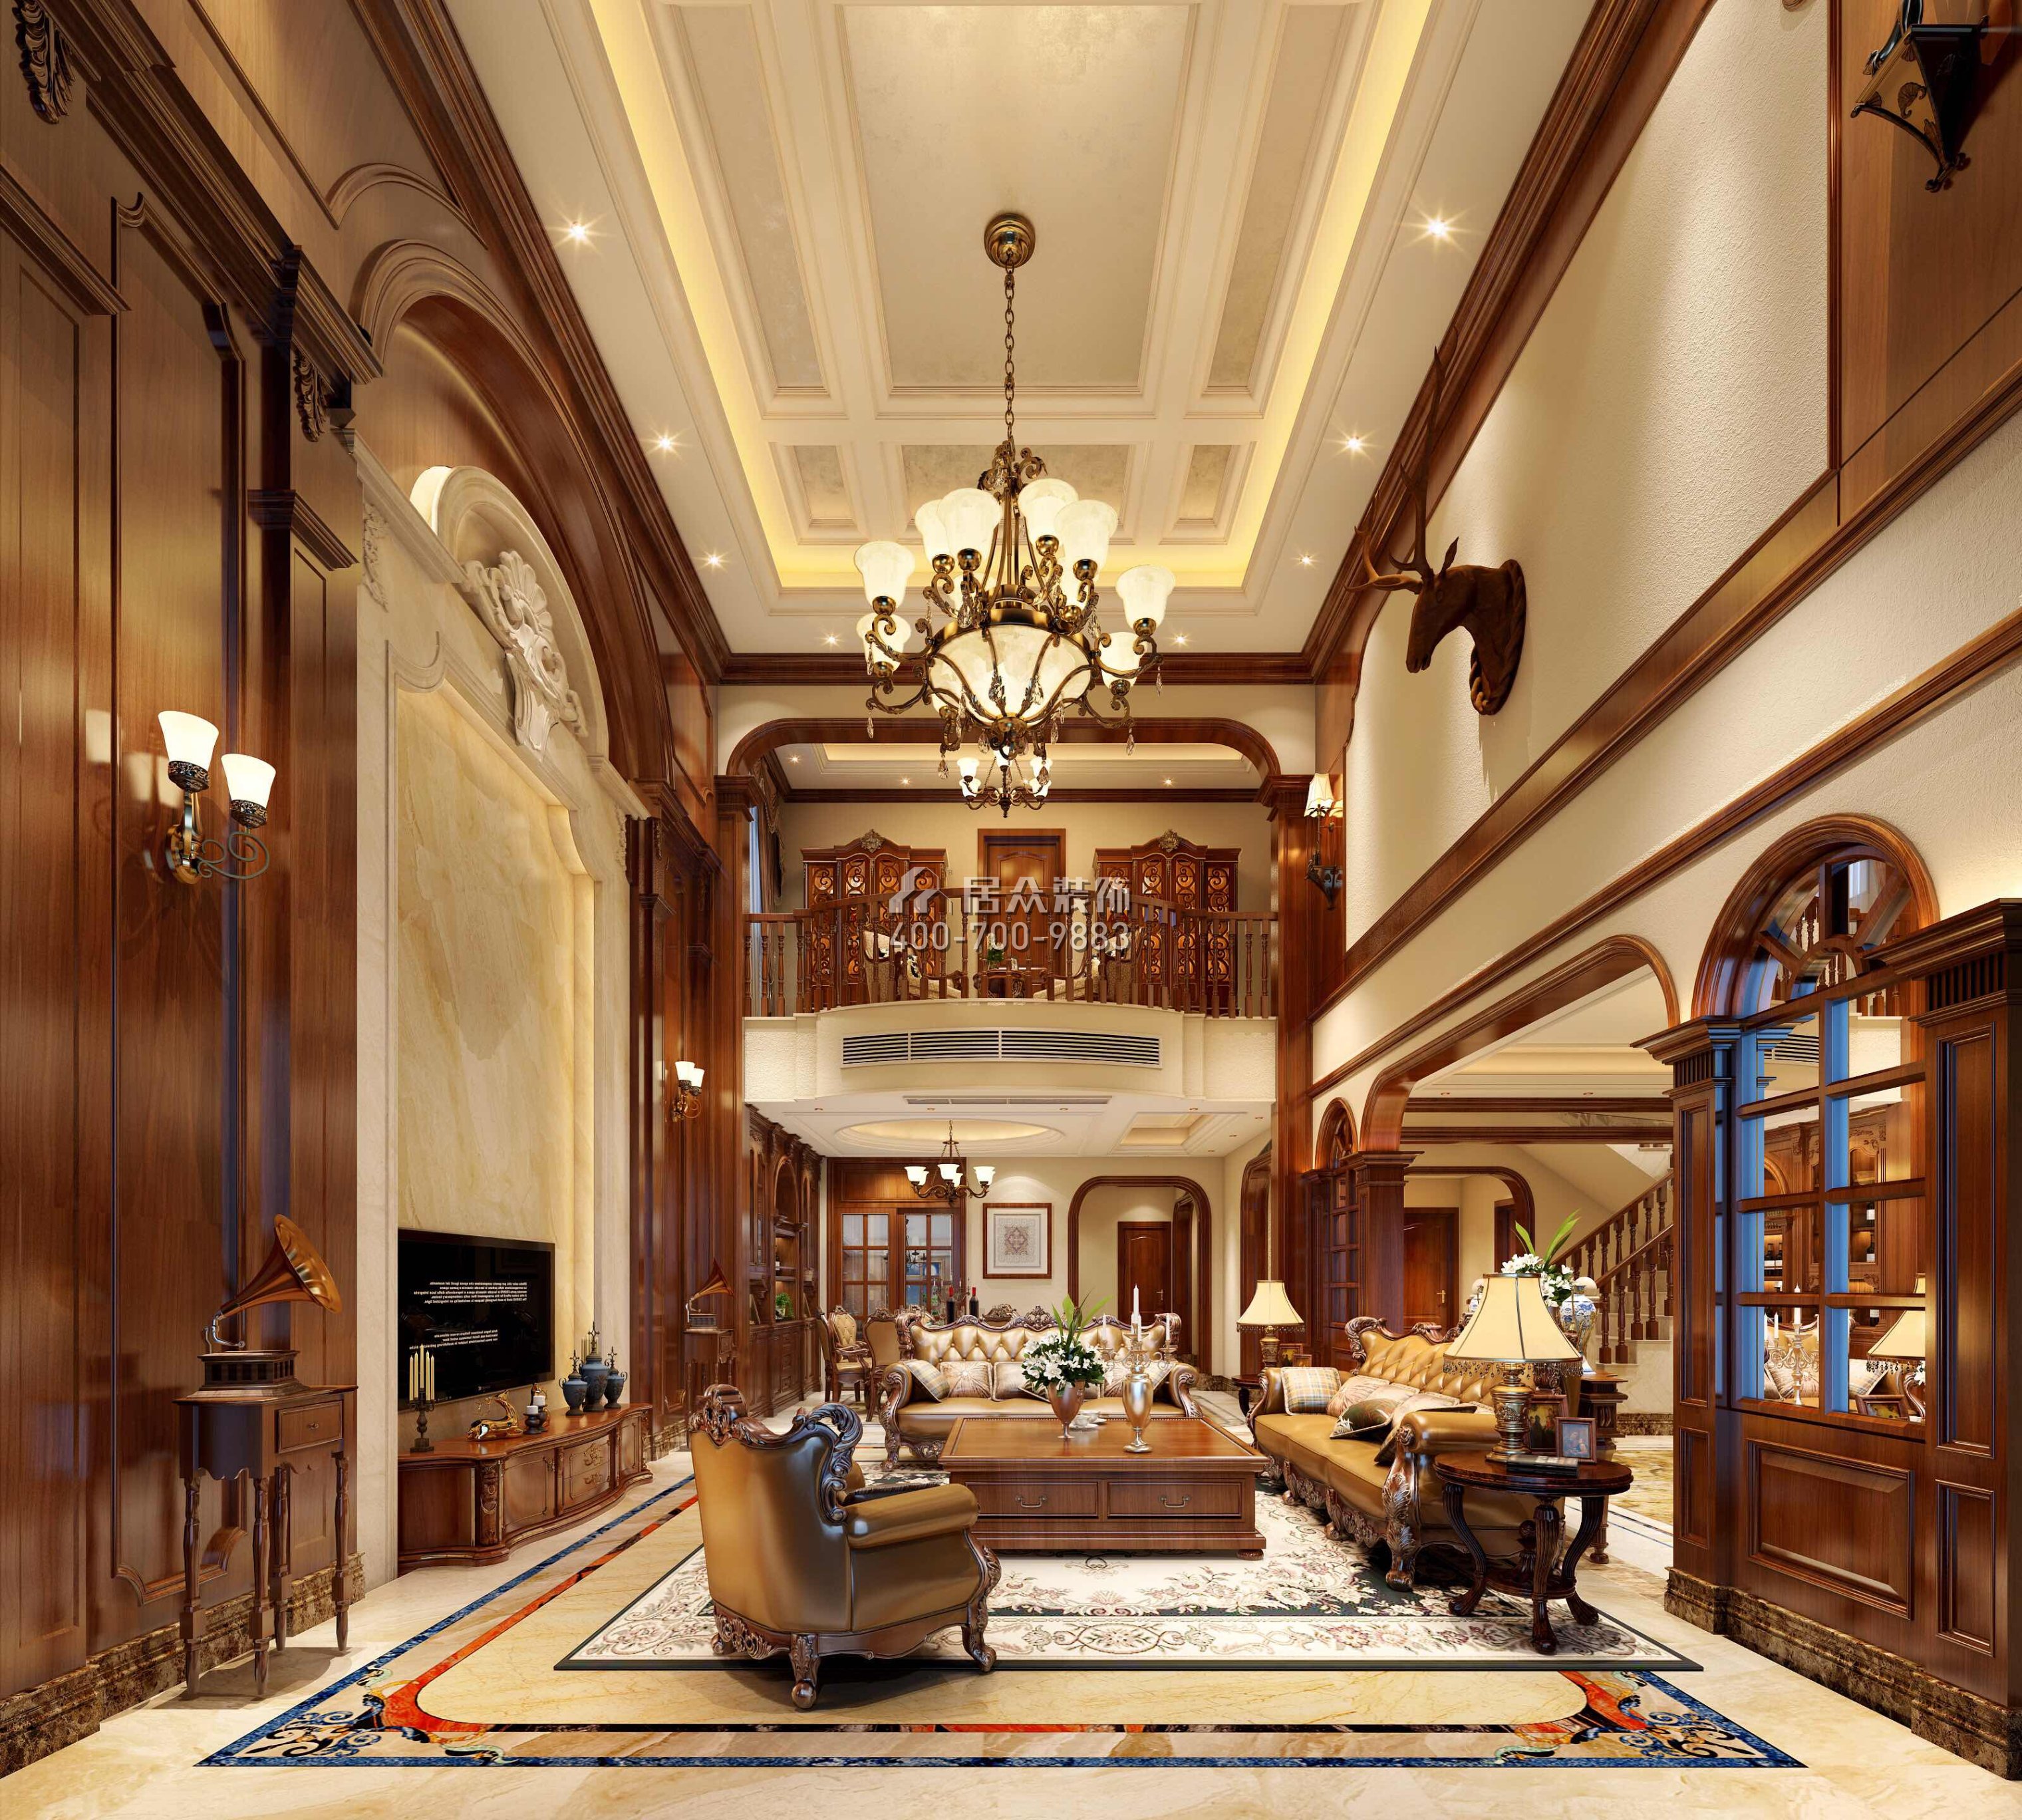 海逸豪庭399平方米美式风格别墅户型客厅装修效果图